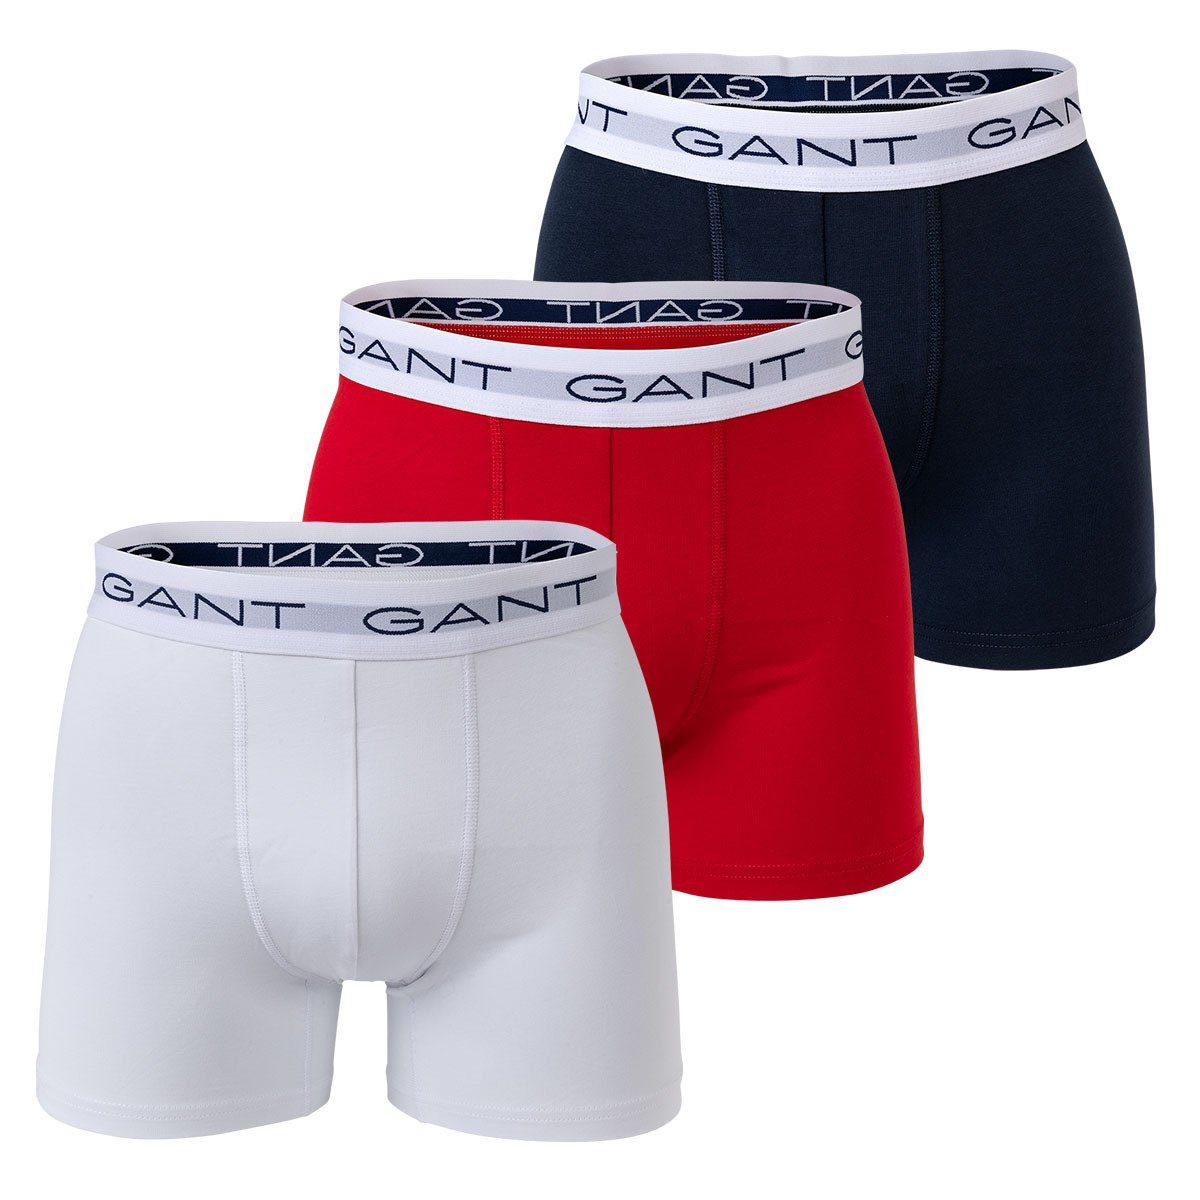 Gant Boxer Herren Boxer Shorts, 3er Pack - Boxer Briefs